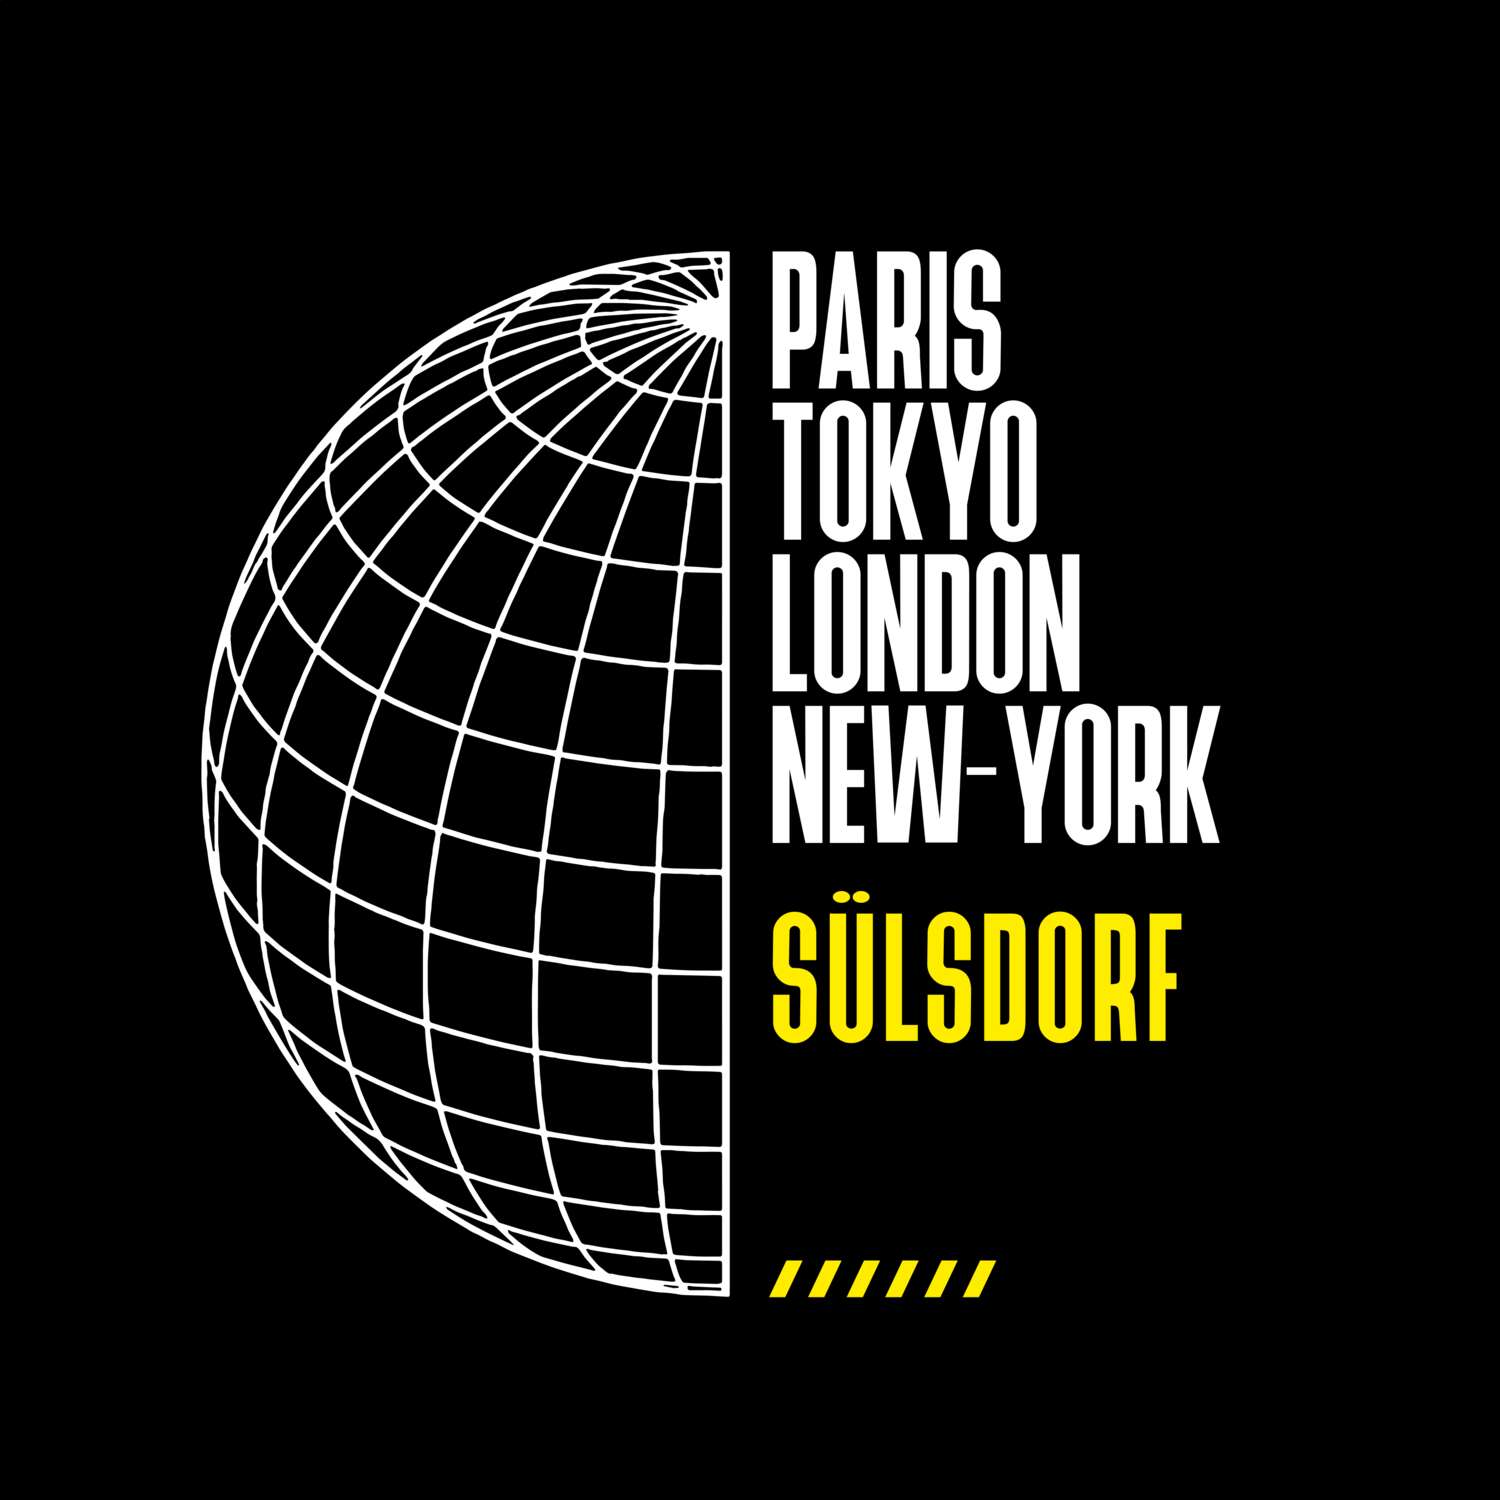 Sülsdorf T-Shirt »Paris Tokyo London«